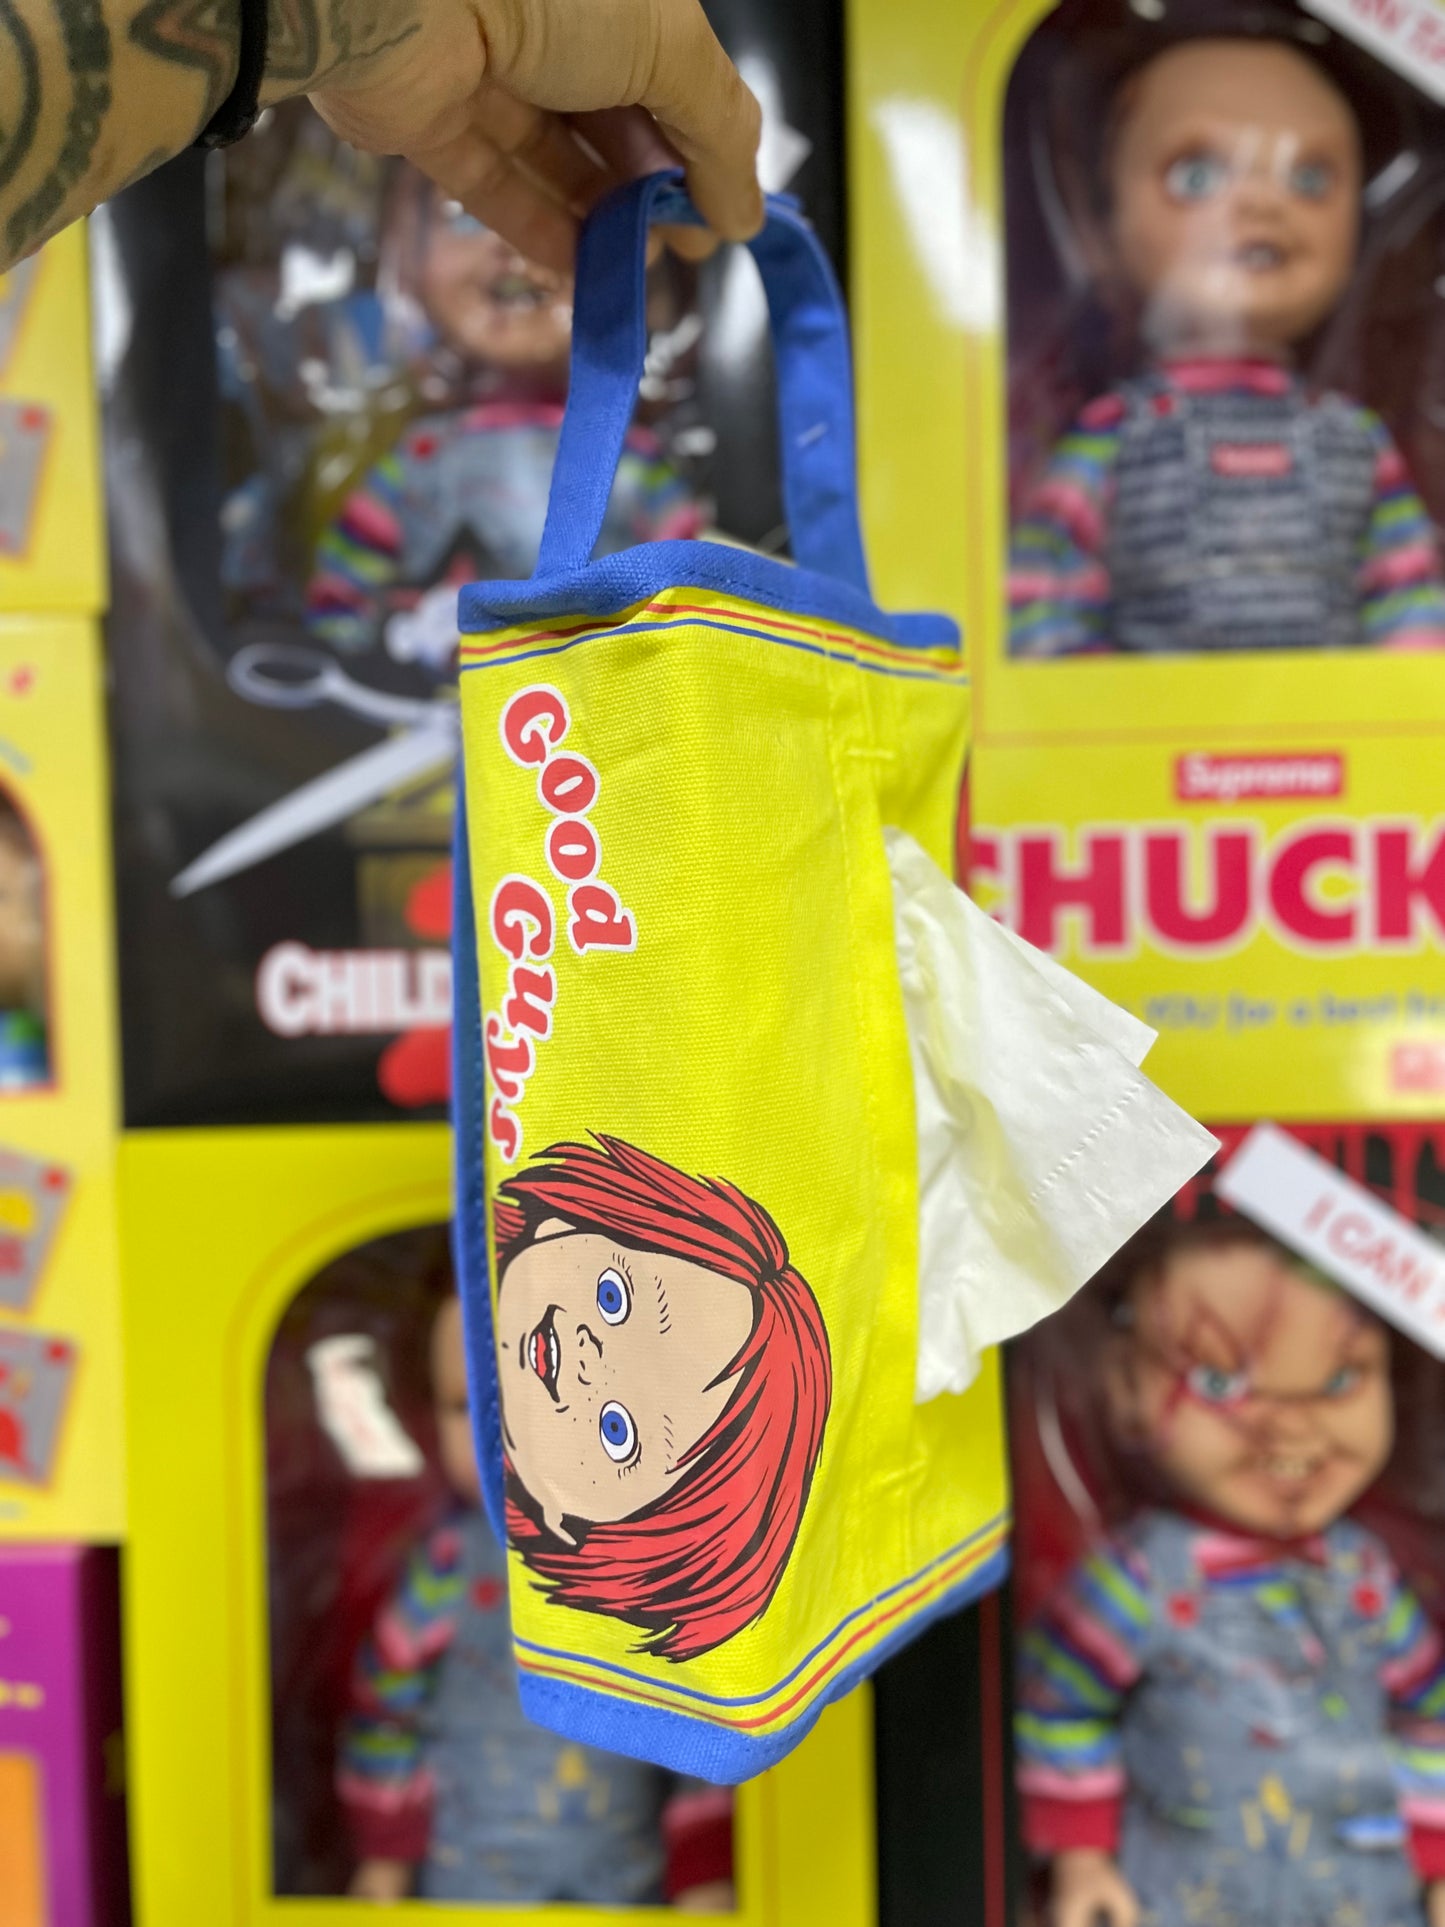 Chucky 紙巾套